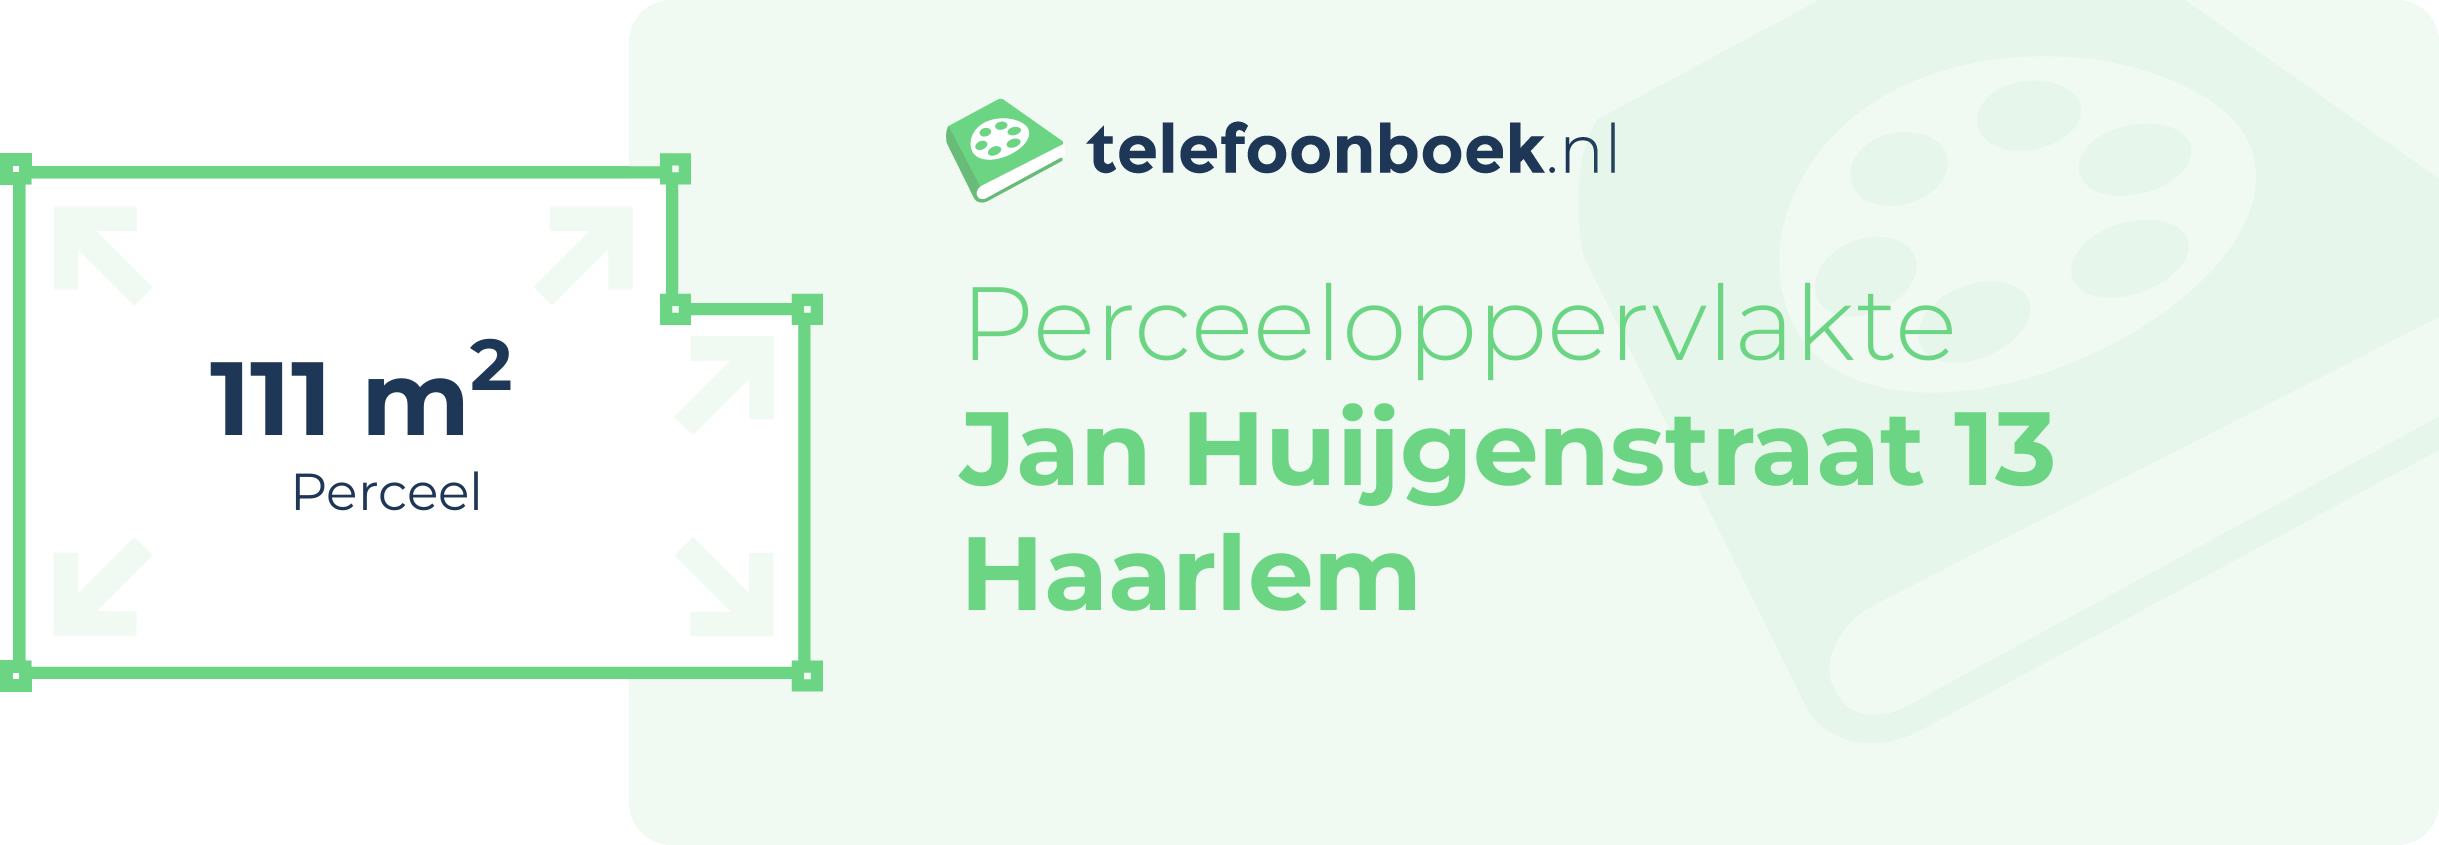 Perceeloppervlakte Jan Huijgenstraat 13 Haarlem